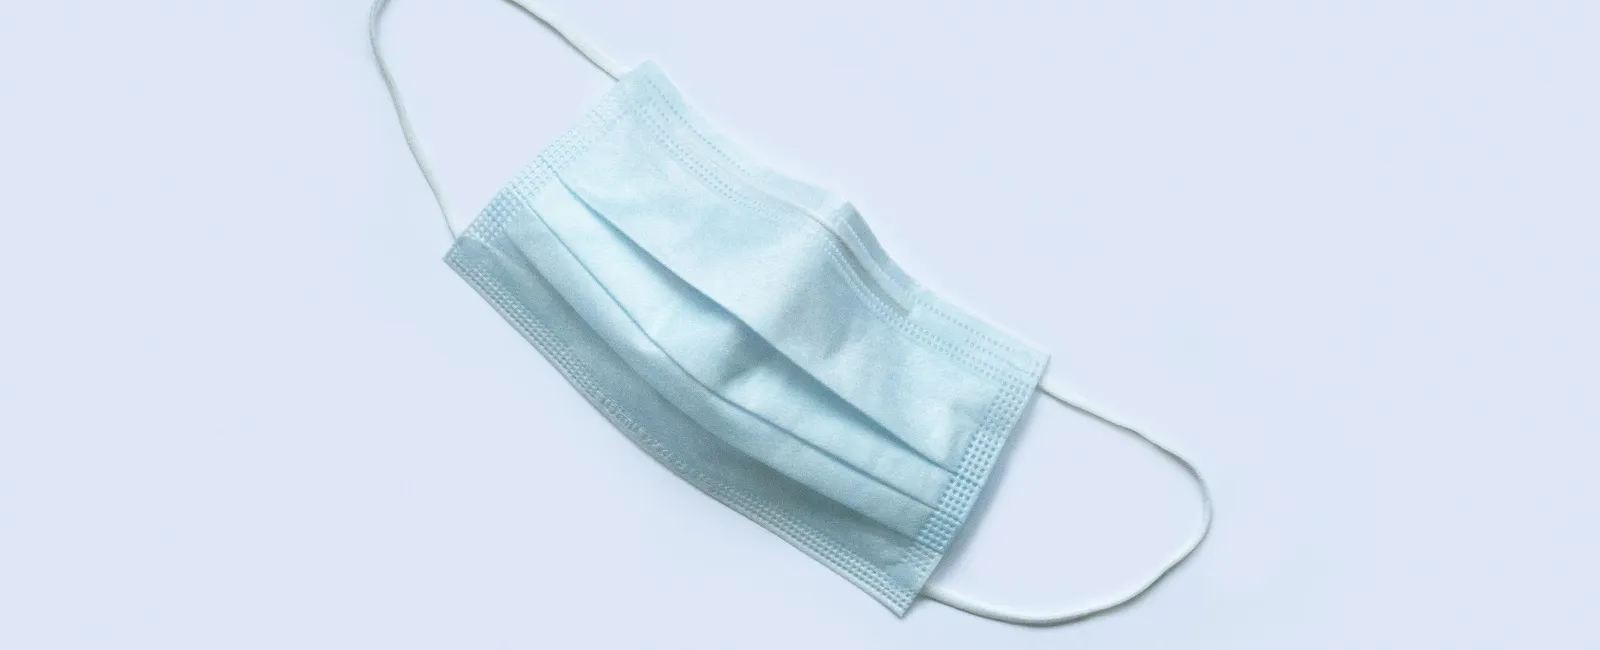 a blue plastic bag